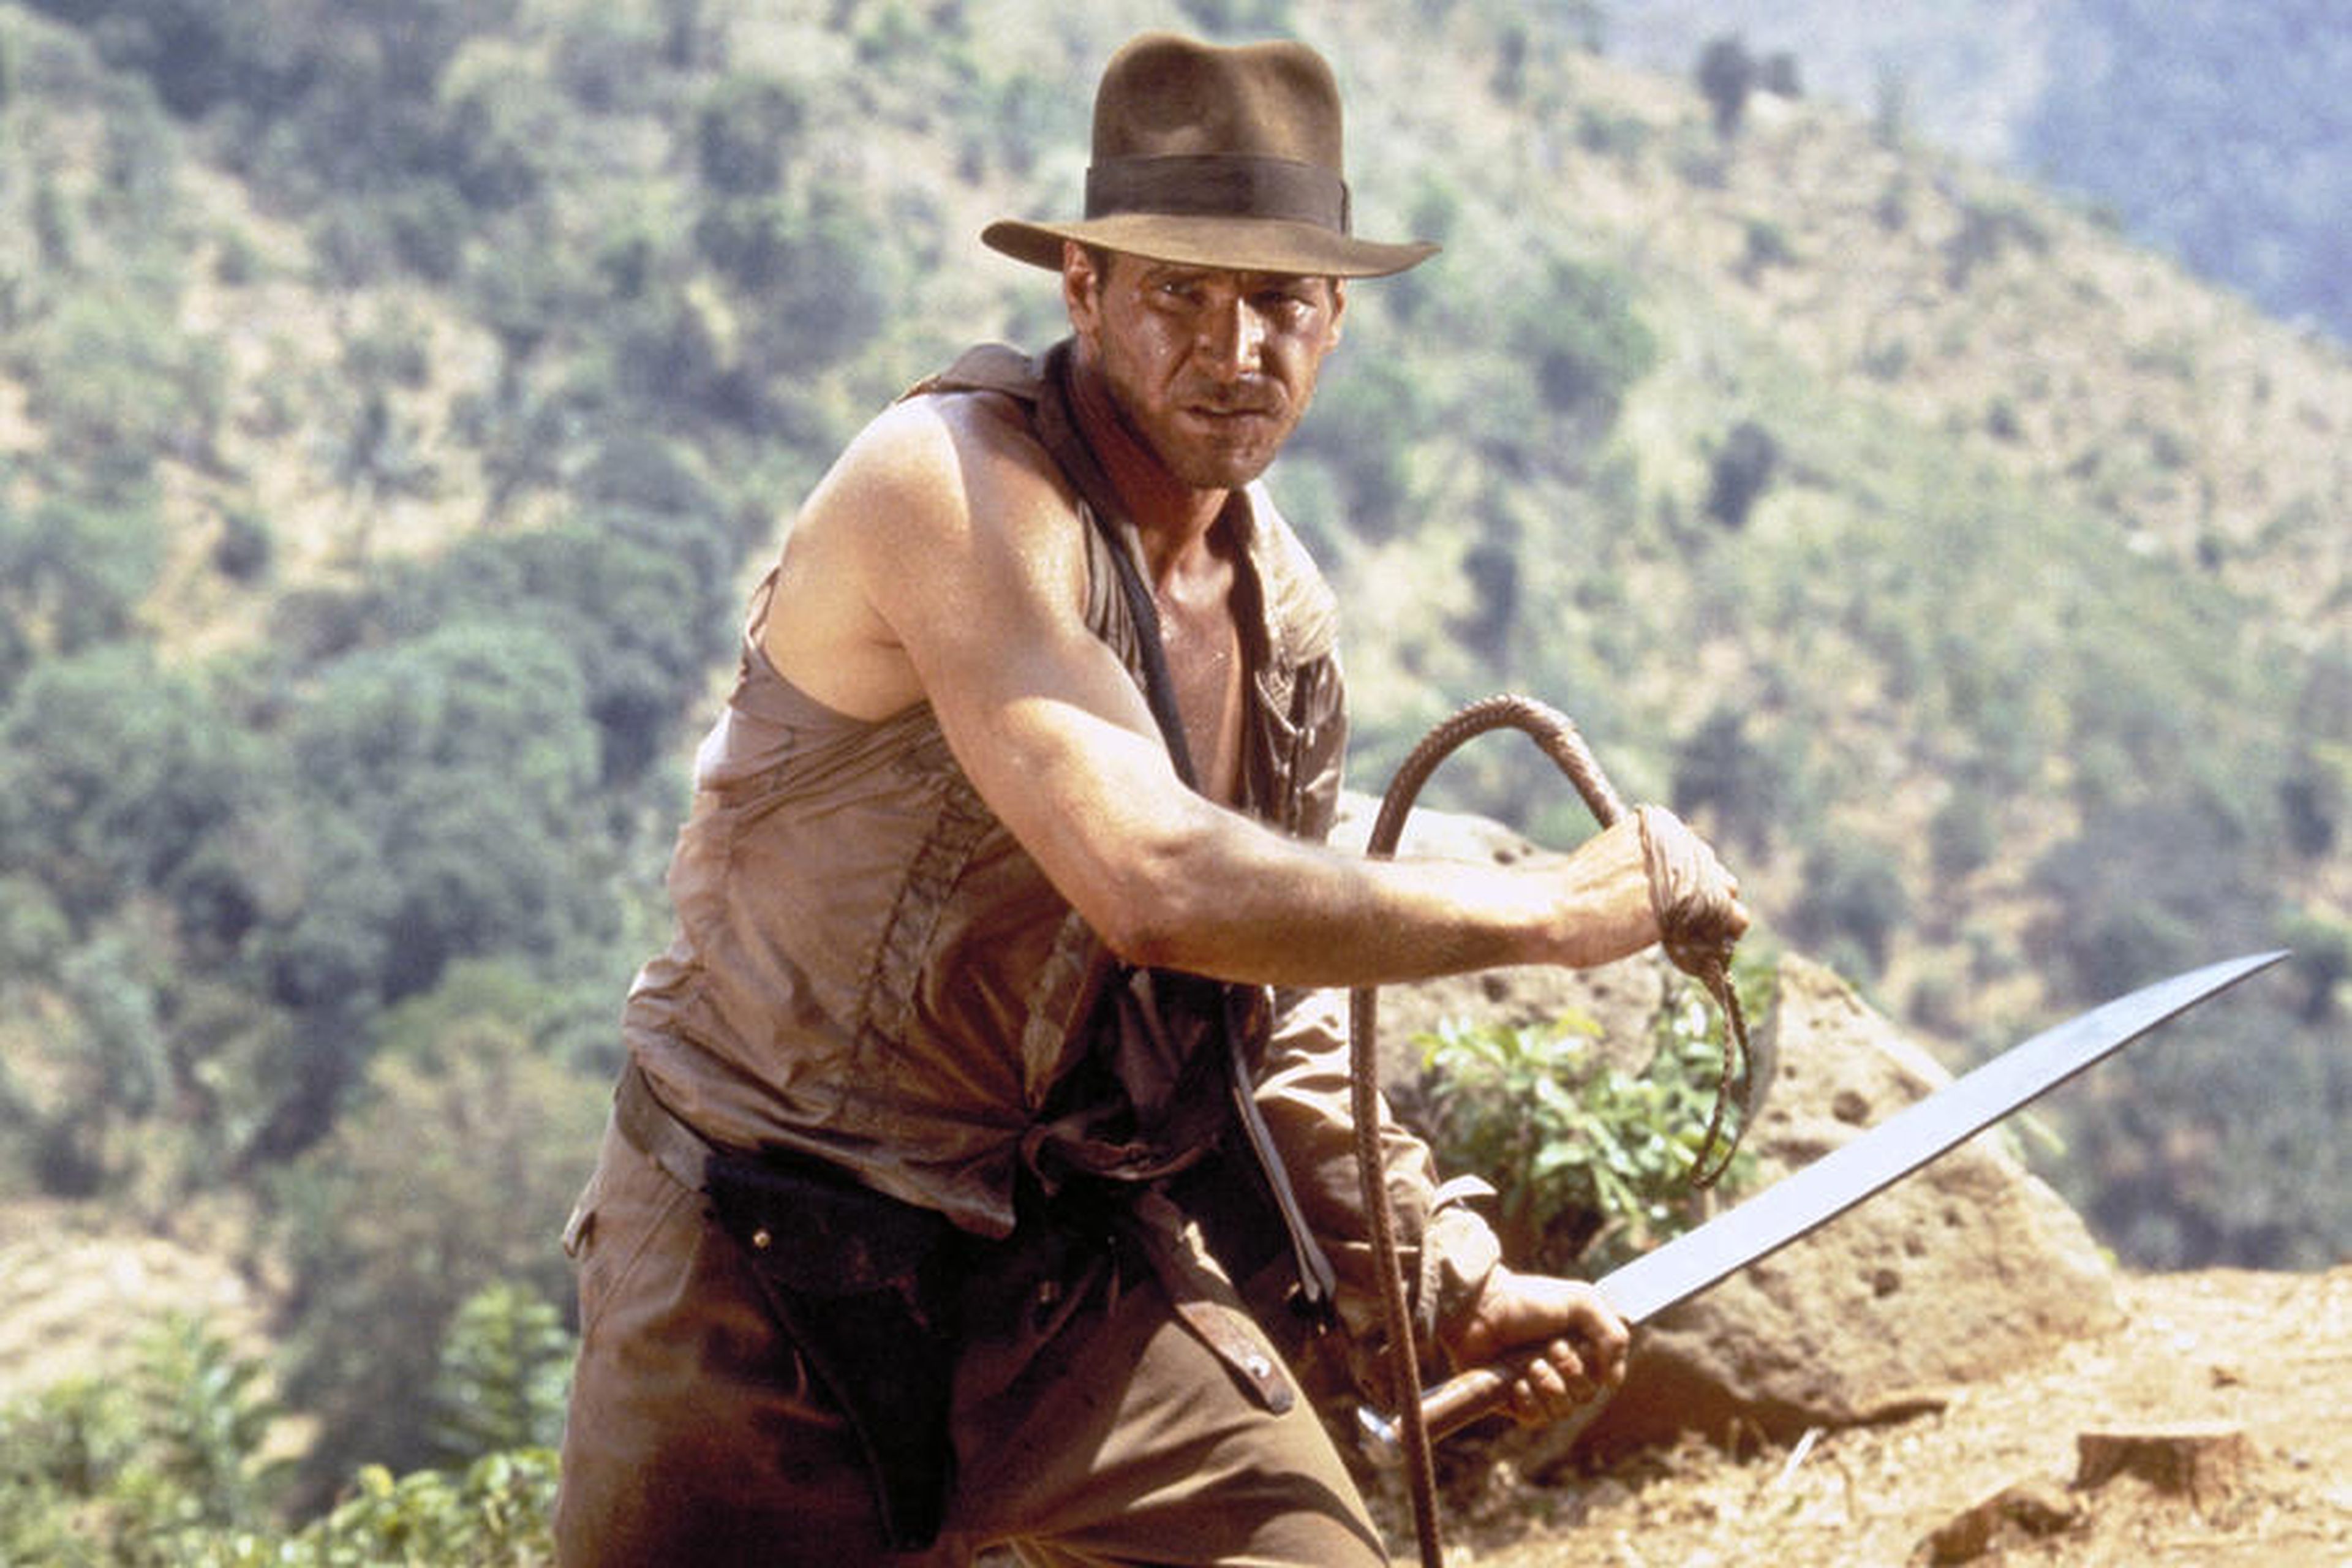 Indiana Jones - Todos sus juegos